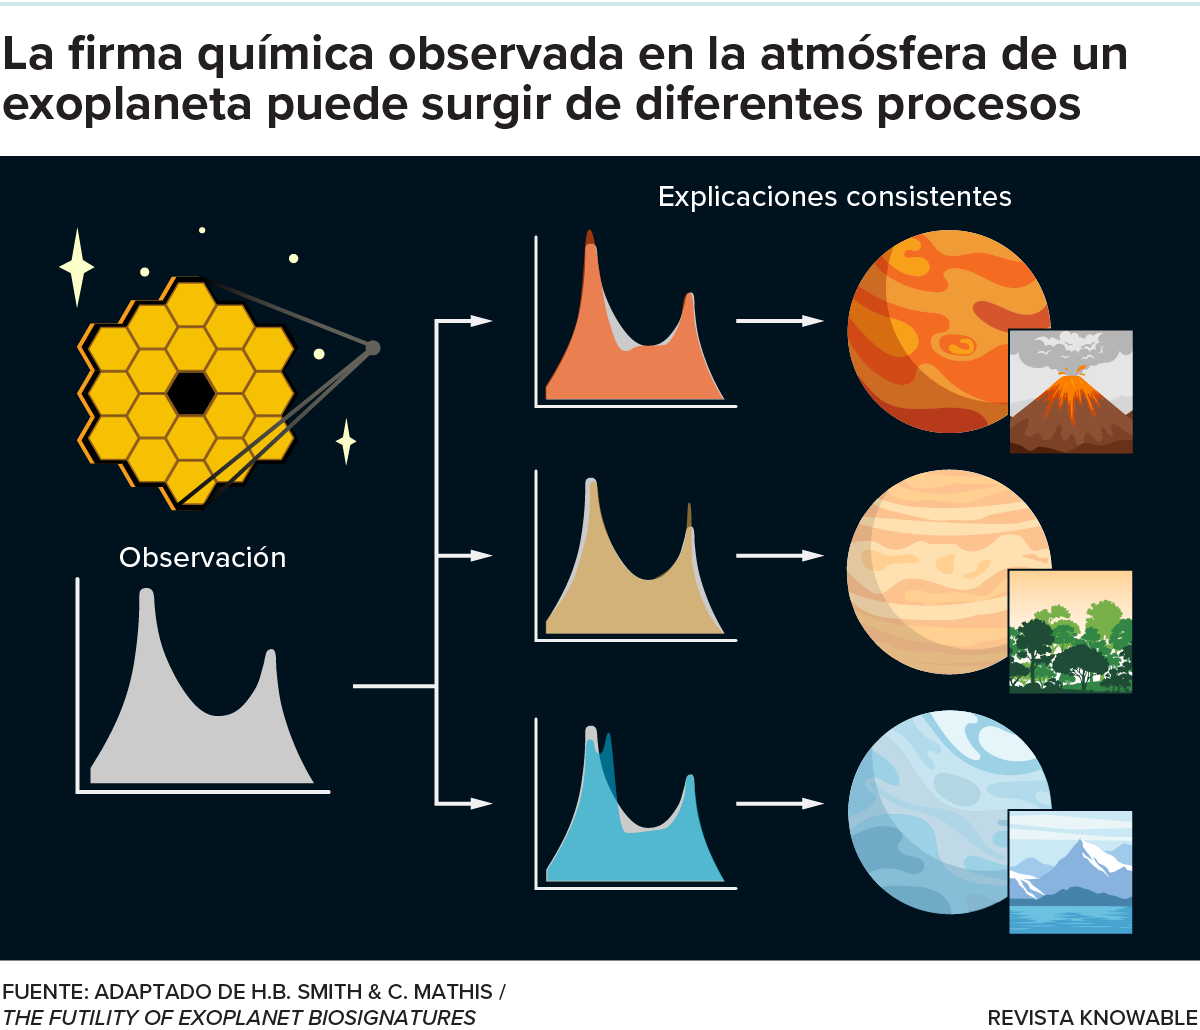 El gráfico muestra tres procesos planetarios diferentes que podrían producir las mismas moléculas en una atmósfera.